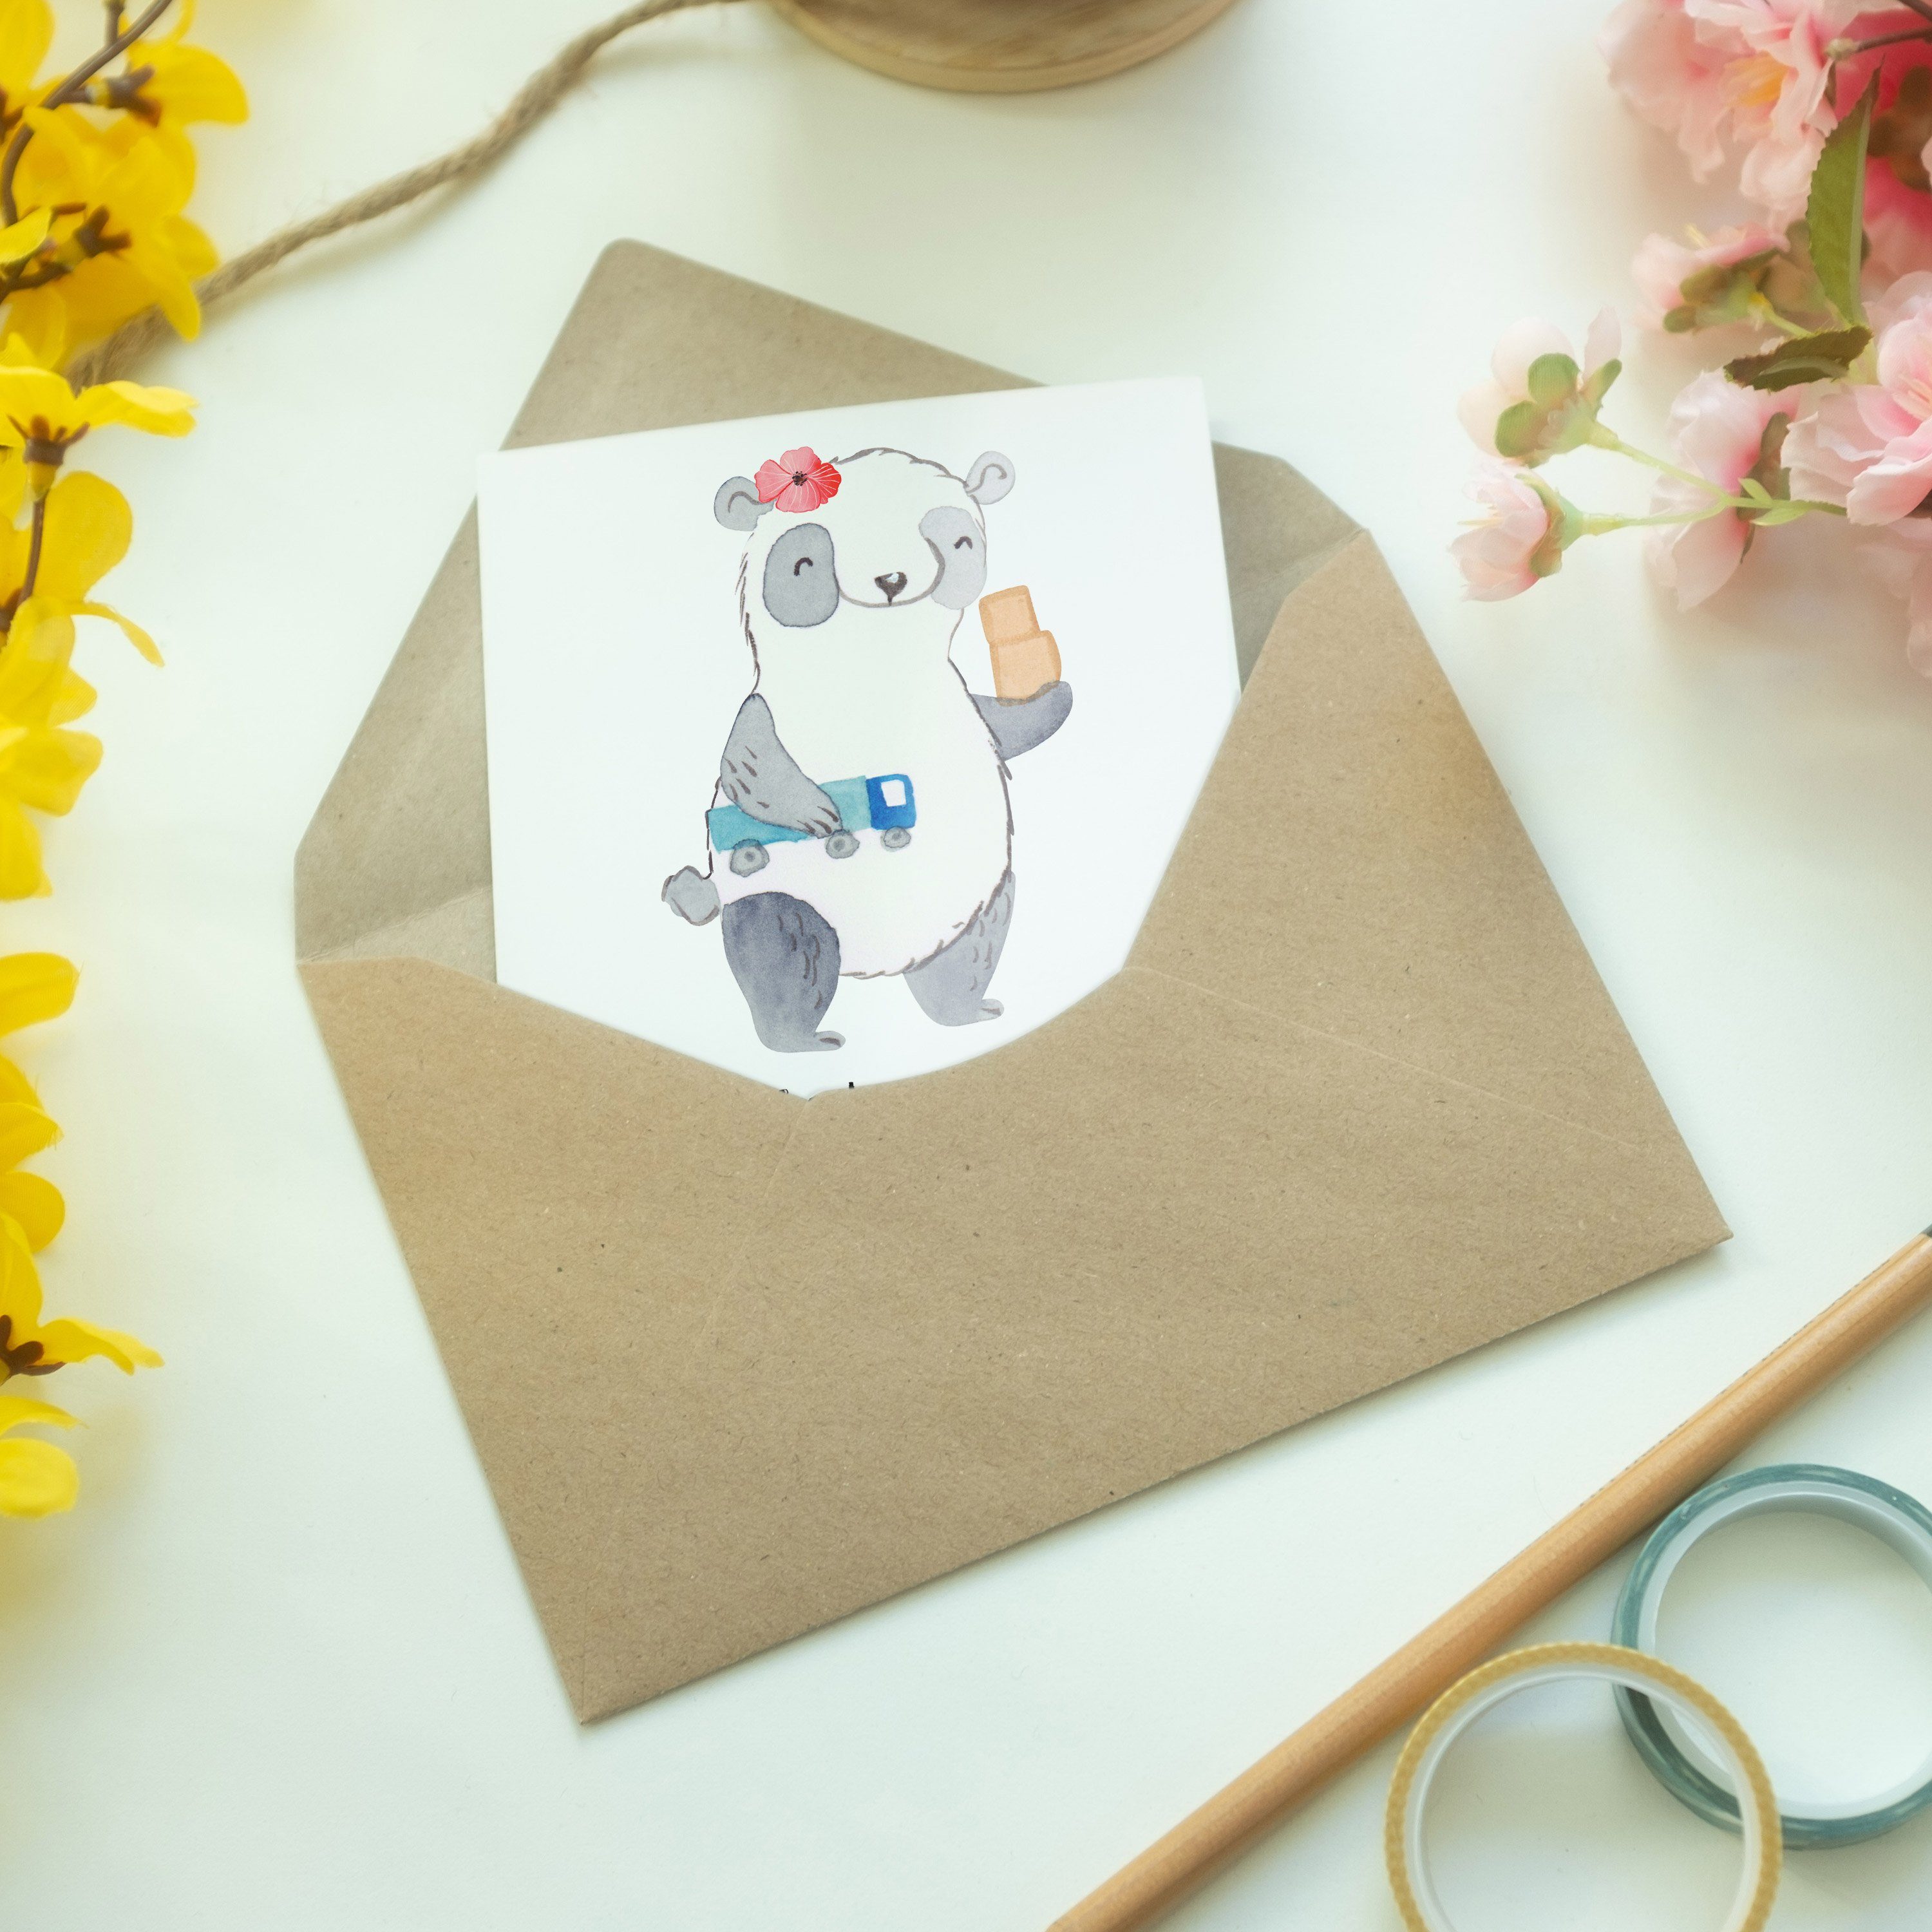 Mr. & Arbeitskol Panda - Klappkarte, - Mrs. Weiß Herz Geschenk, mit Grußkarte Speditionskauffrau